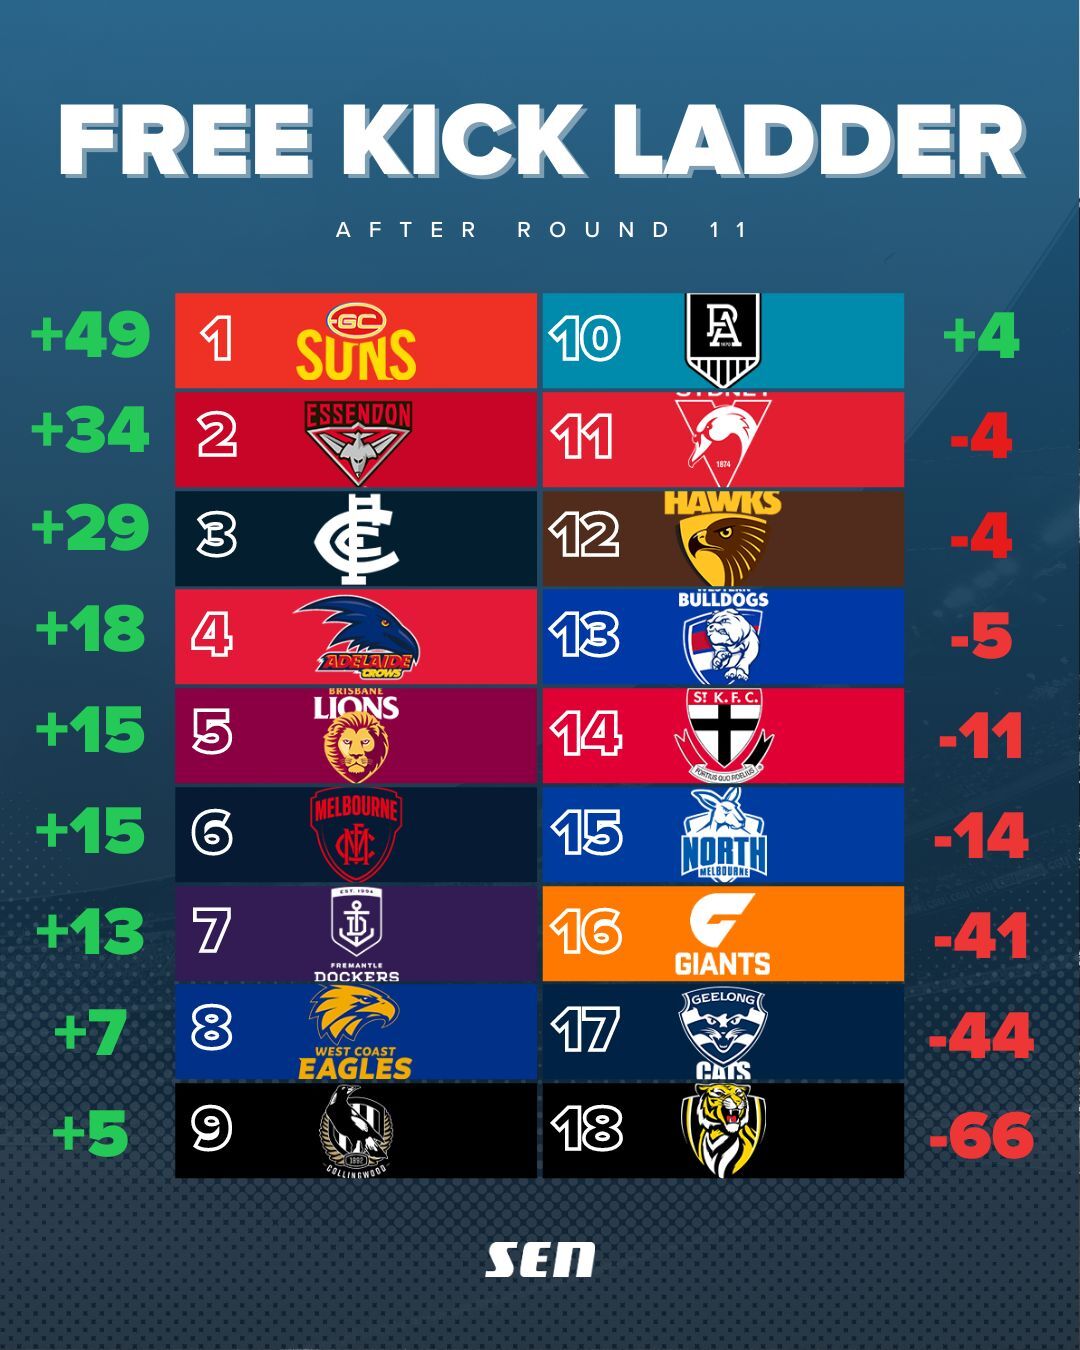 FK Ladder Round 11